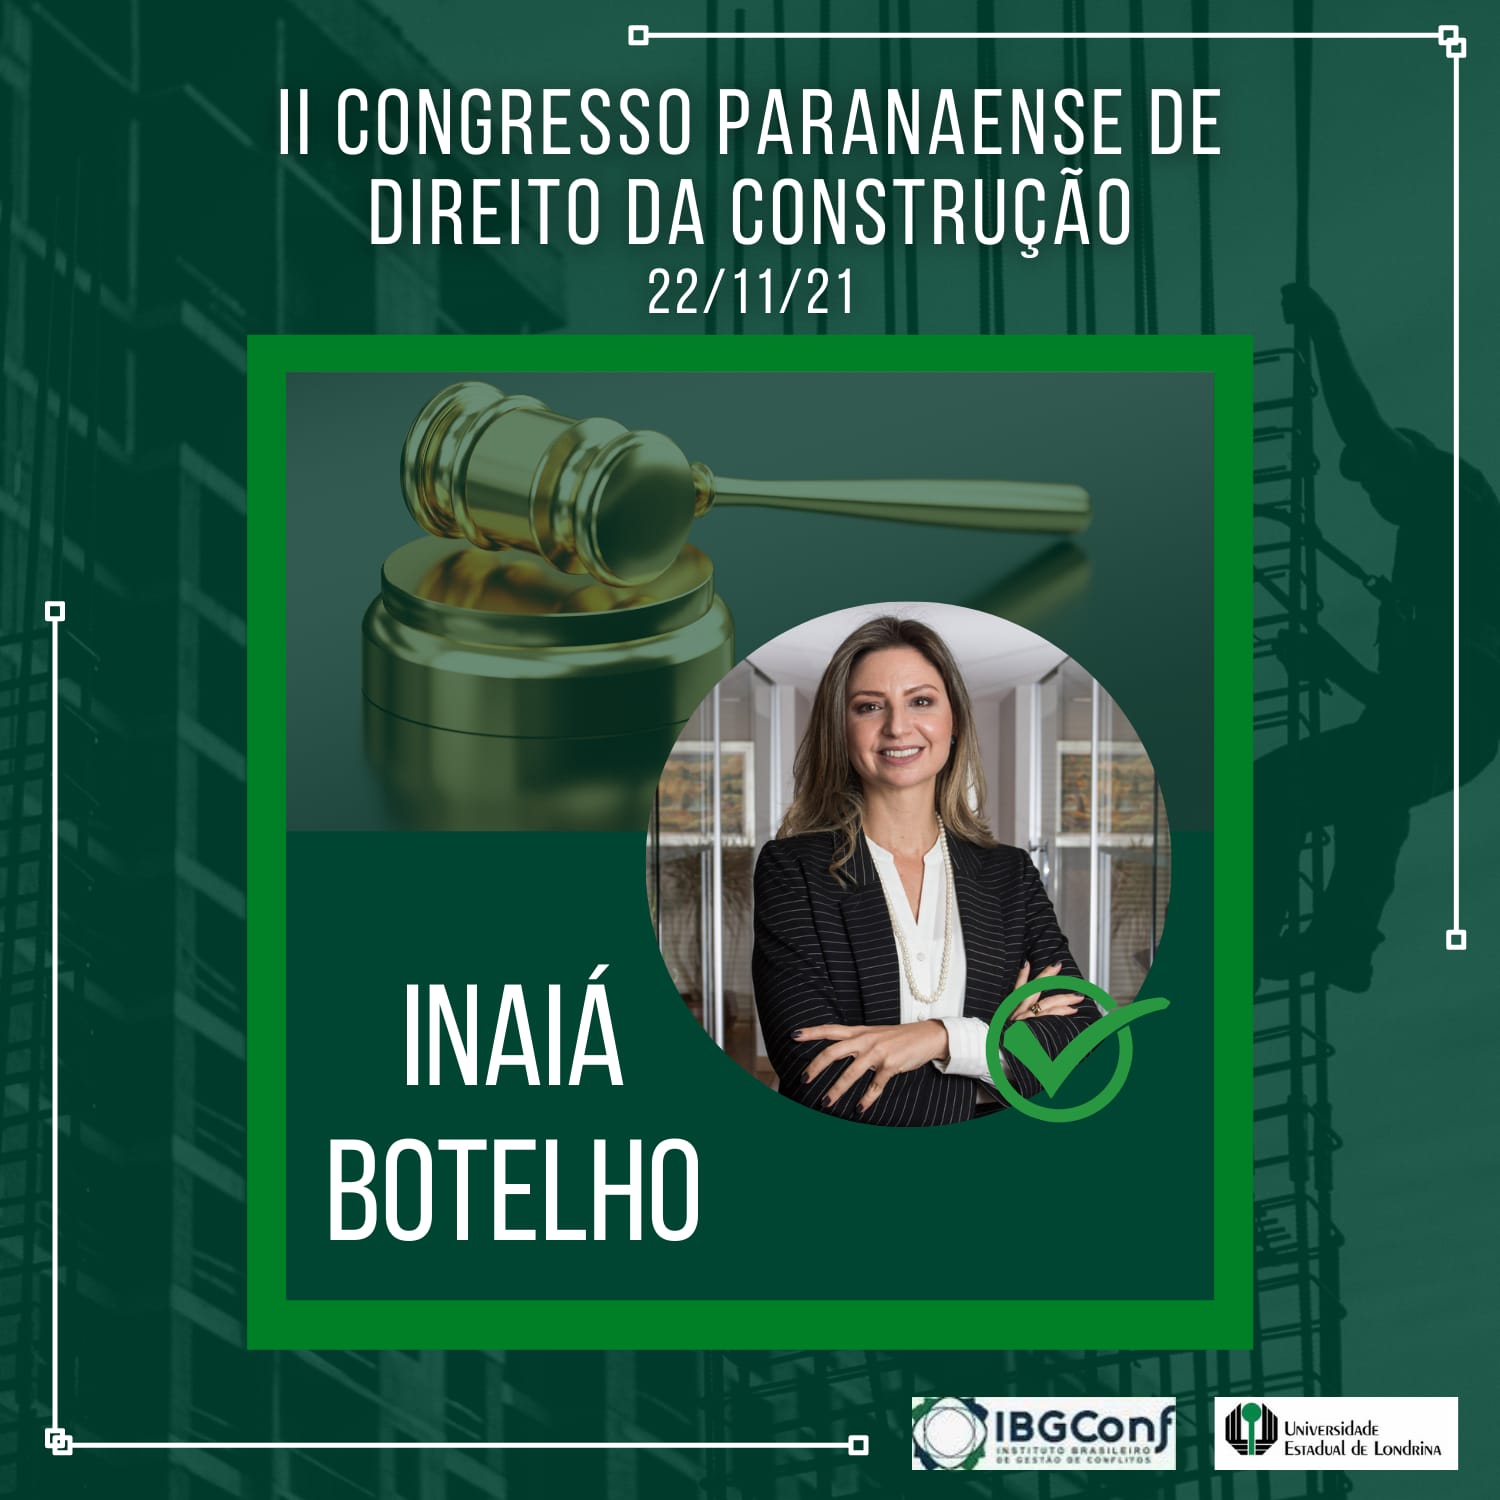 NOVEMBRO_Congresso-Paranaense-de-Direito-na-Construcao_Inaia-Botelho